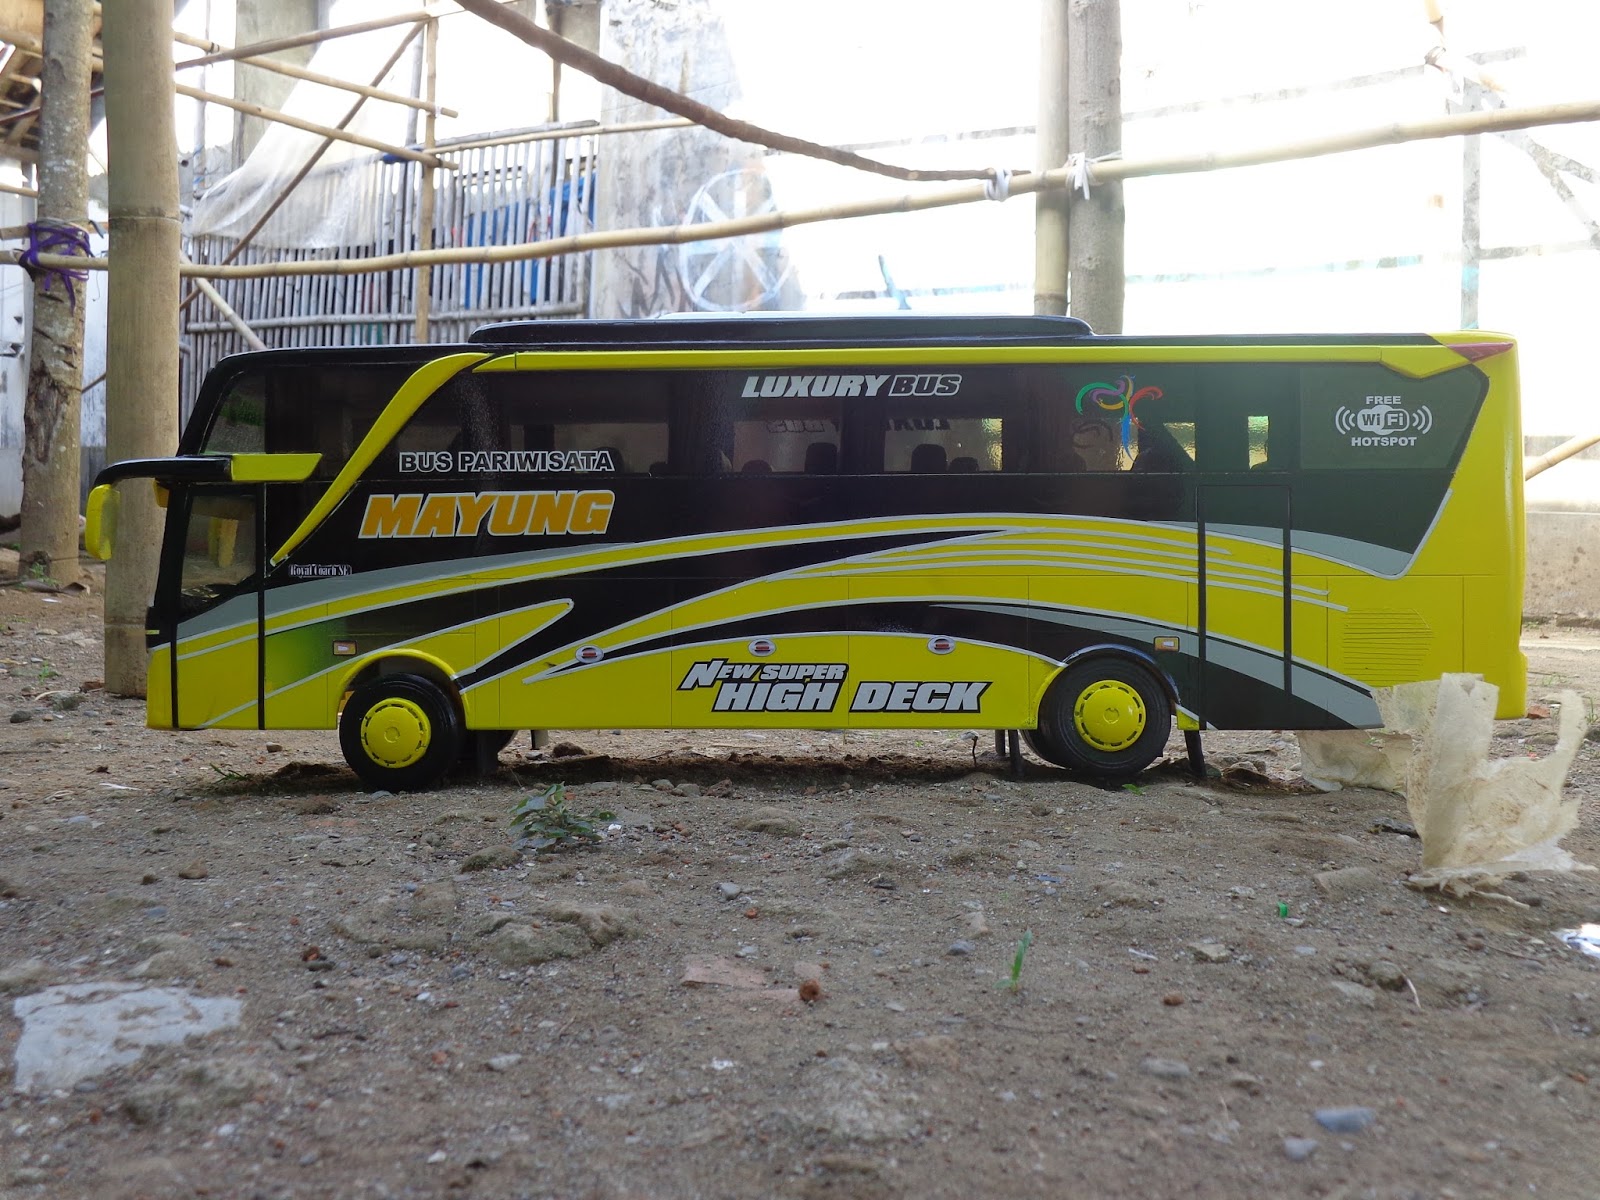  Gambar  Bus  Shd Dari  Samping  Arena Modifikasi